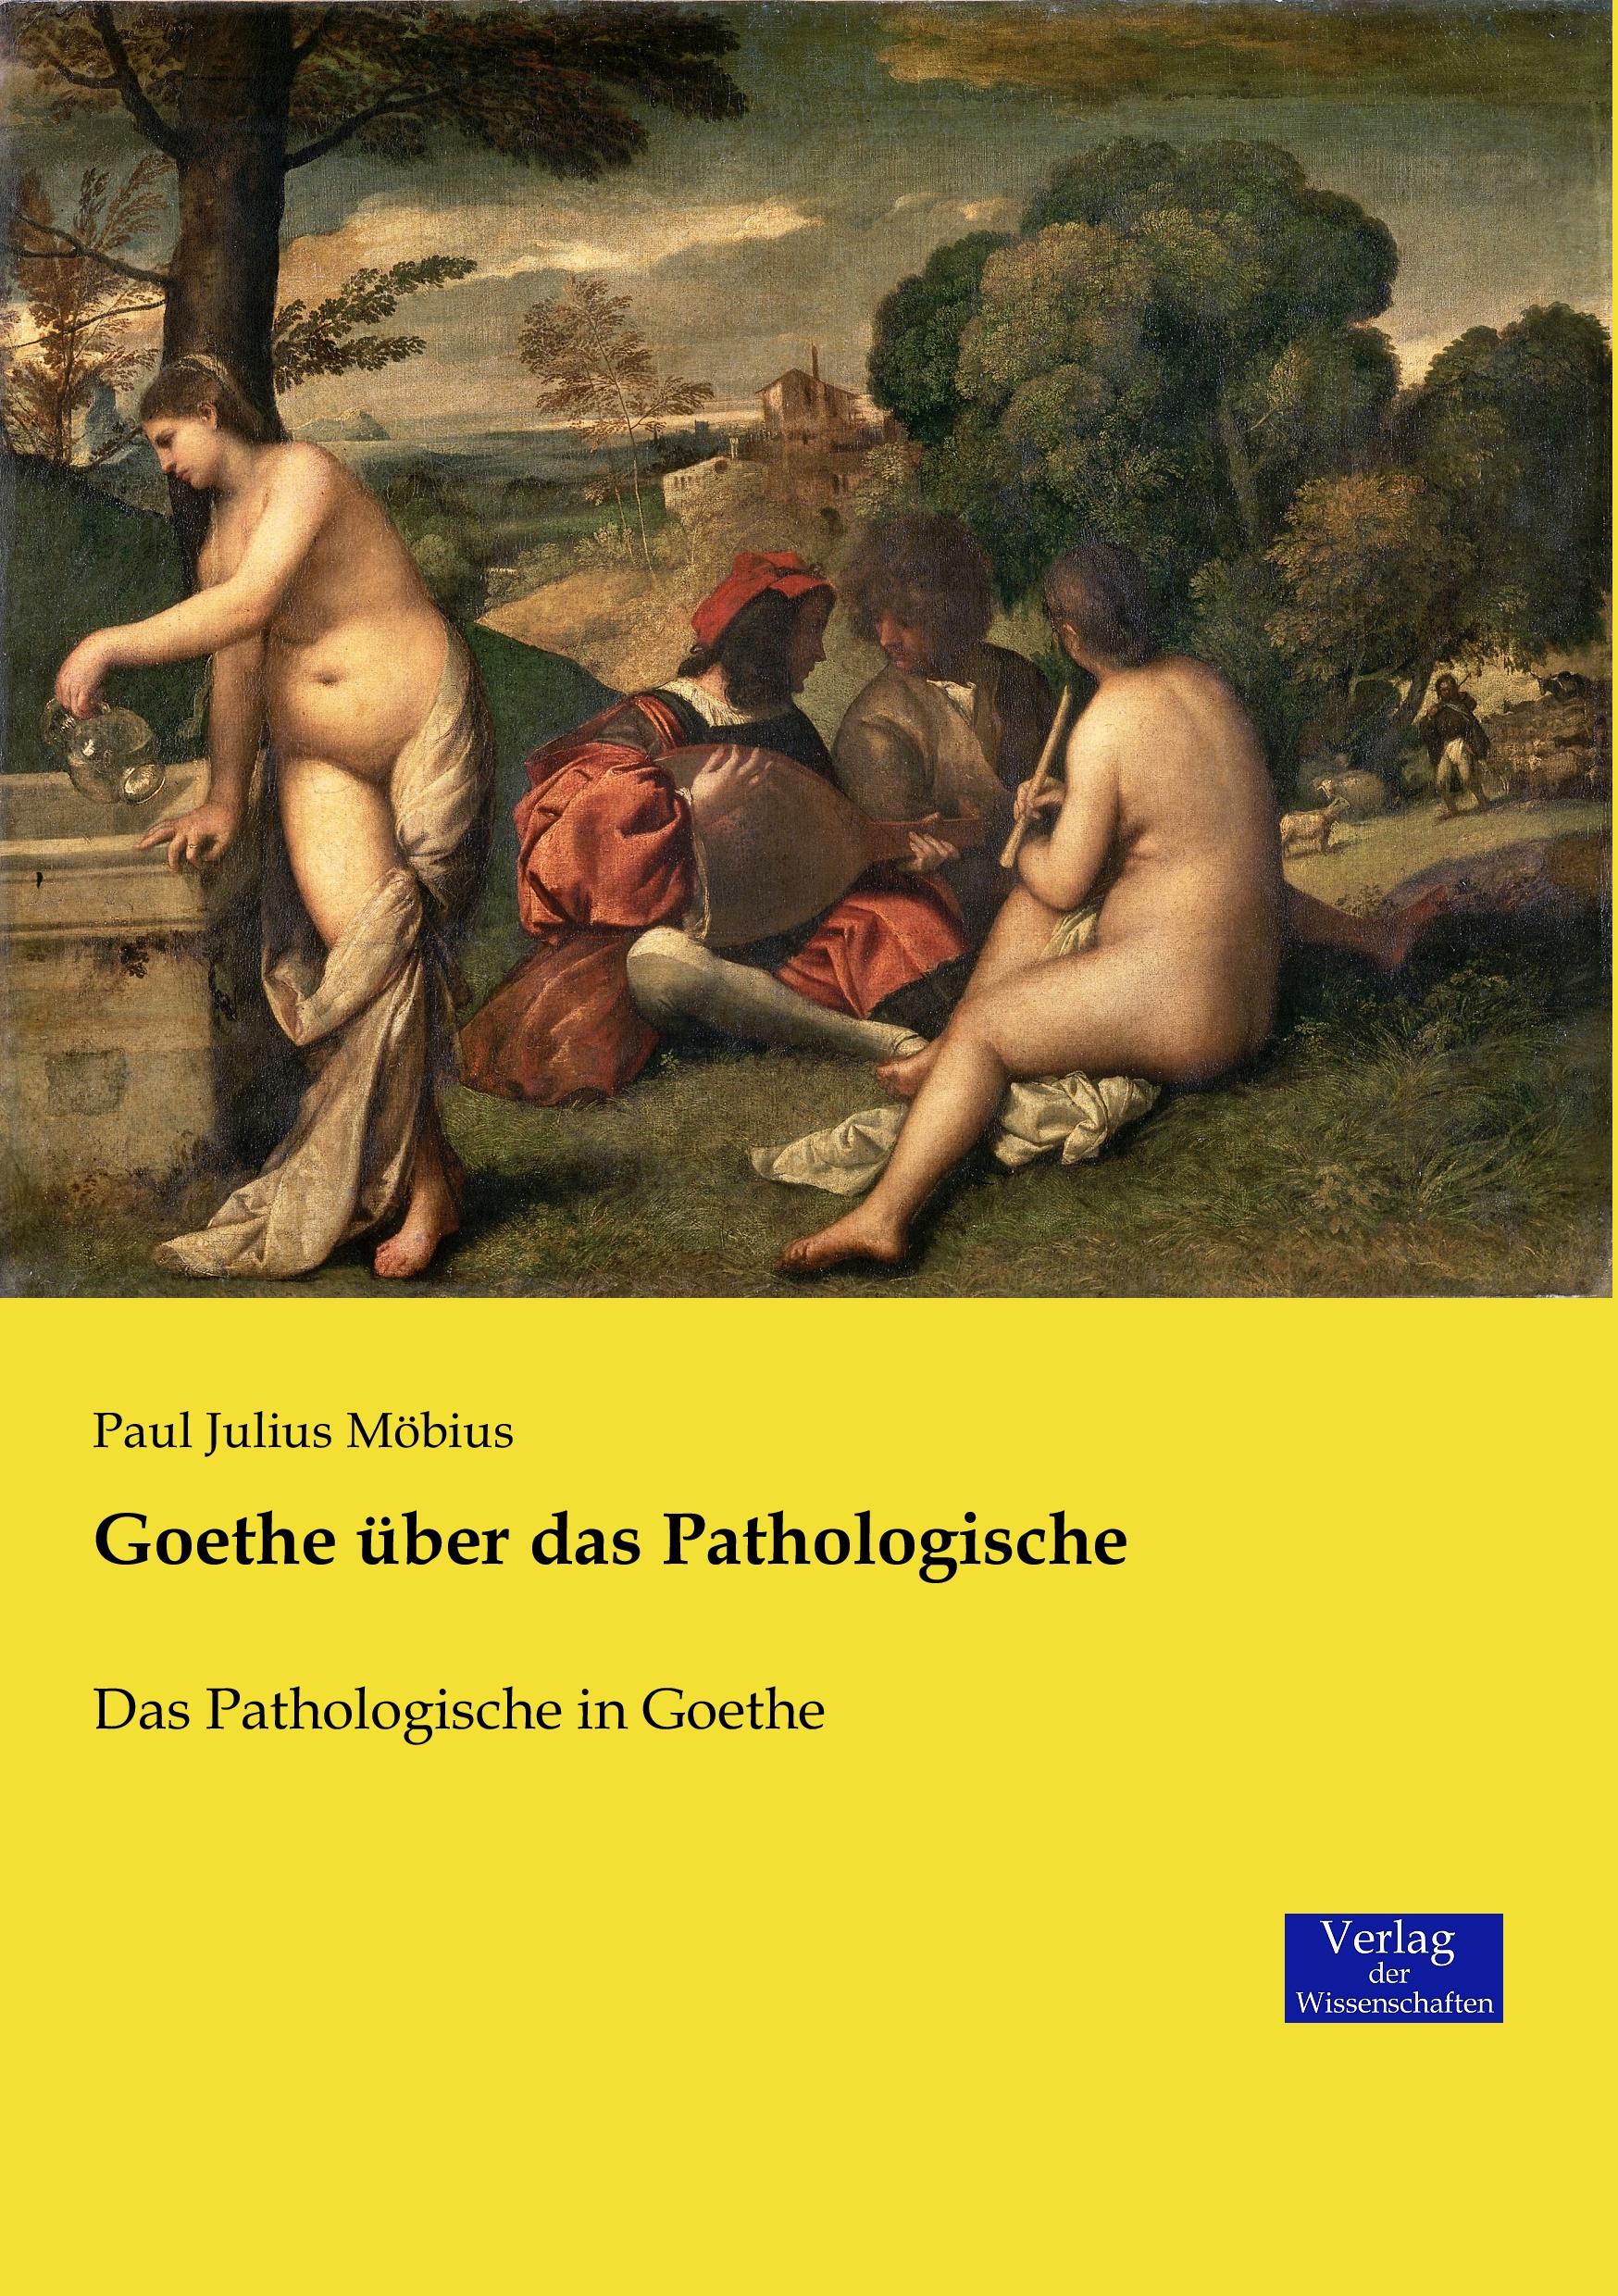 Goethe über das Pathologische | Das Pathologische in Goethe | Paul Julius Möbius | Taschenbuch | Paperback | 284 S. | Deutsch | 2019 | Vero Verlag | EAN 9783957008022 - Möbius, Paul Julius